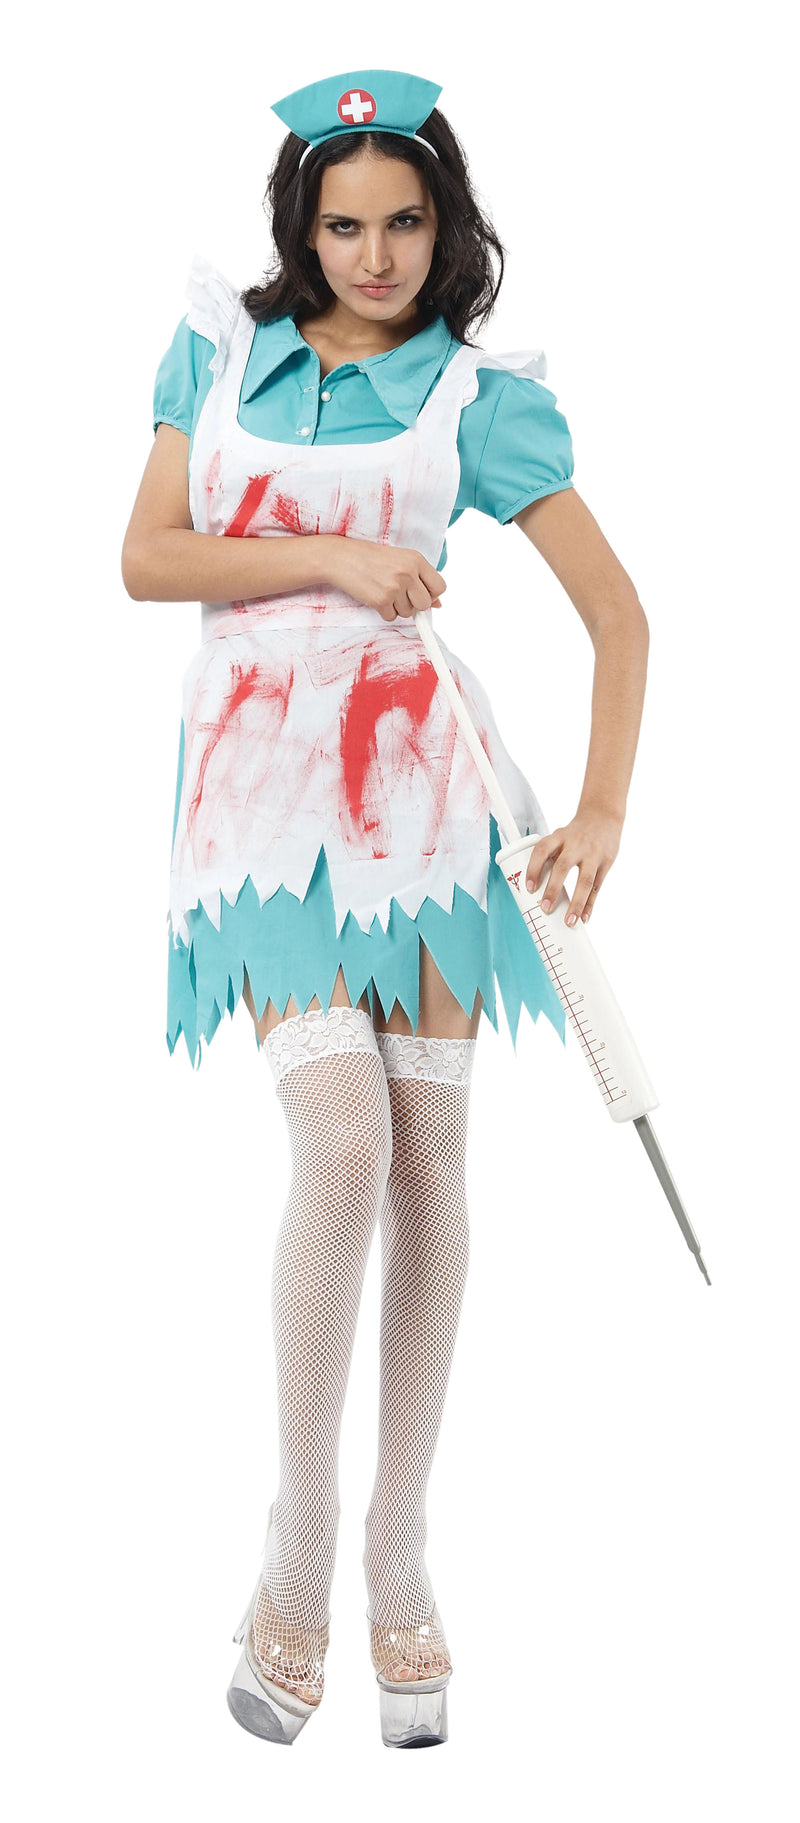 Blood Splattered Nurse Costume Adult